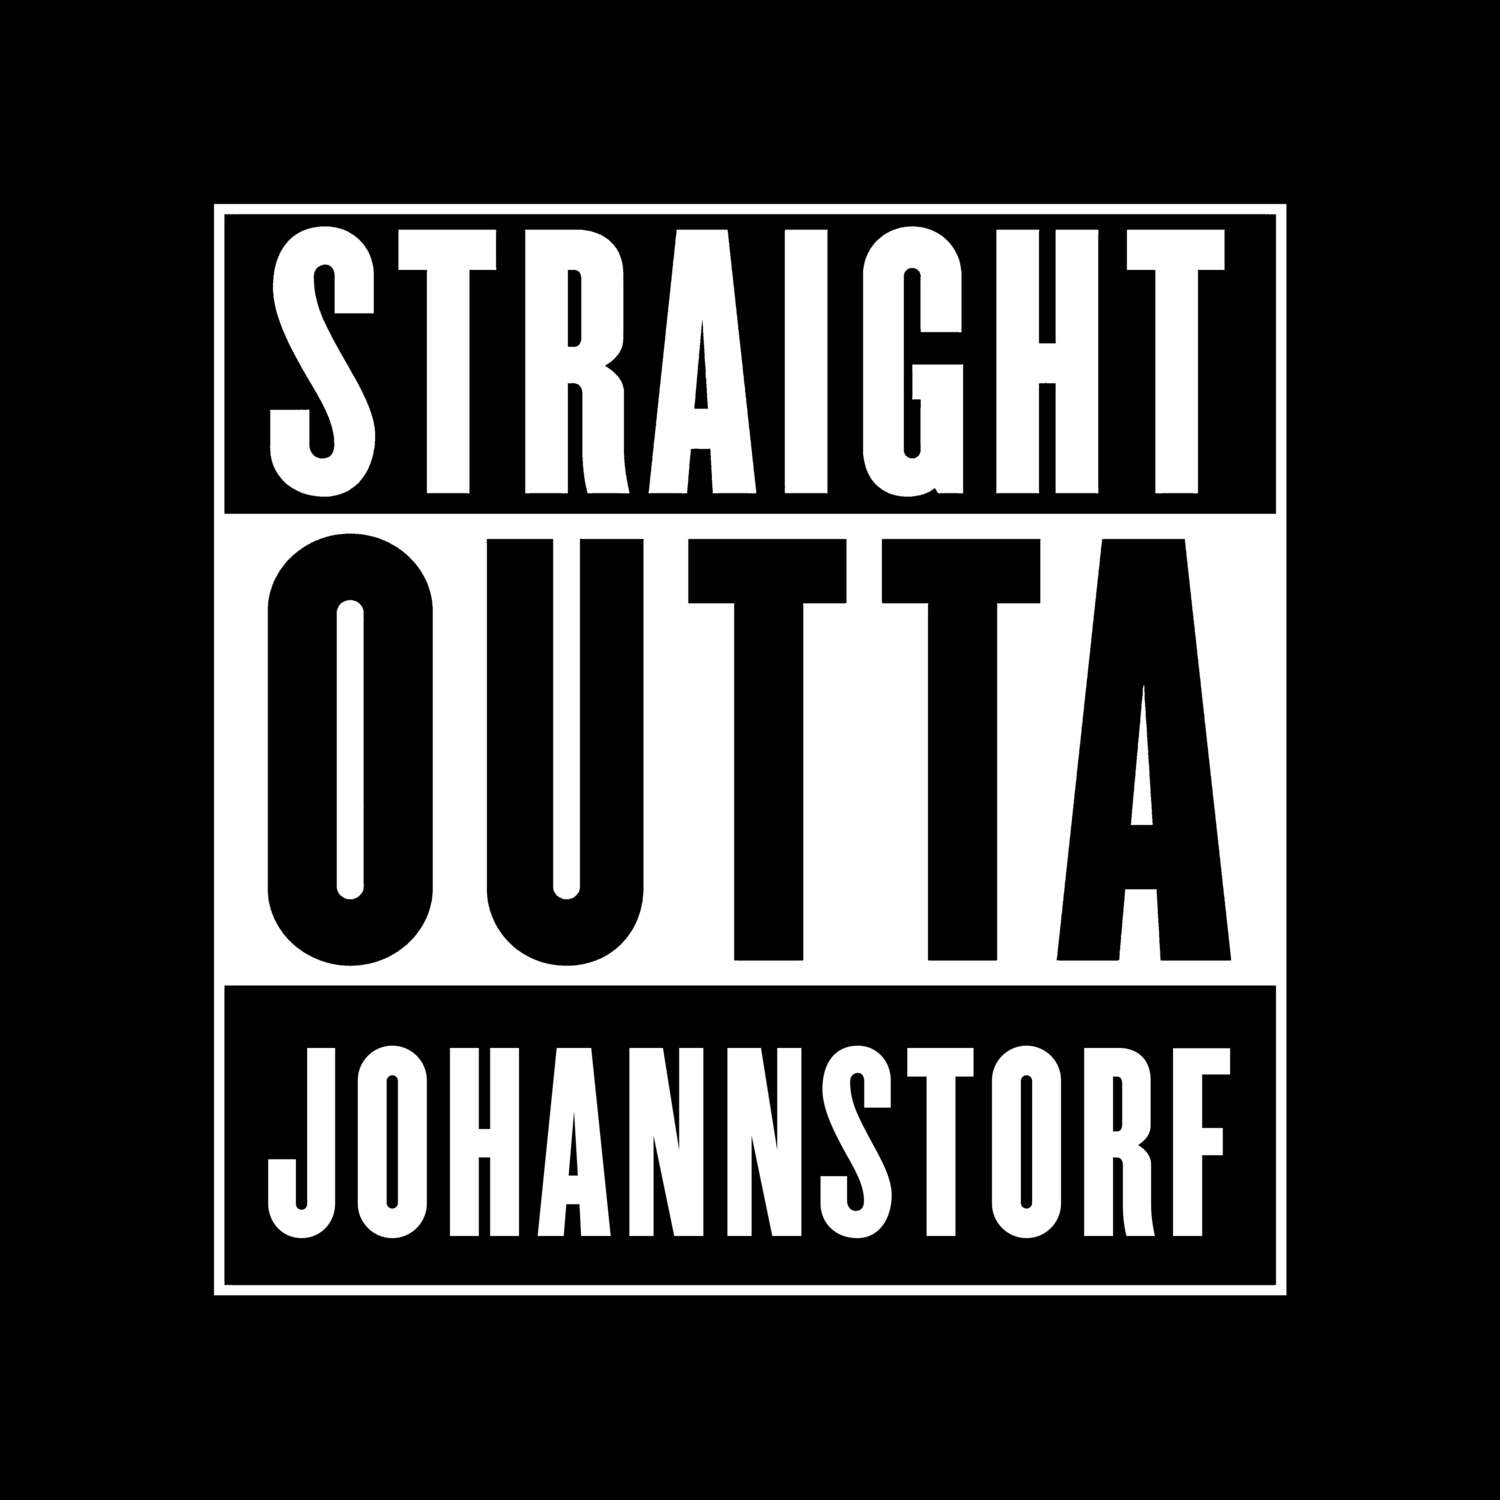 Johannstorf T-Shirt »Straight Outta«